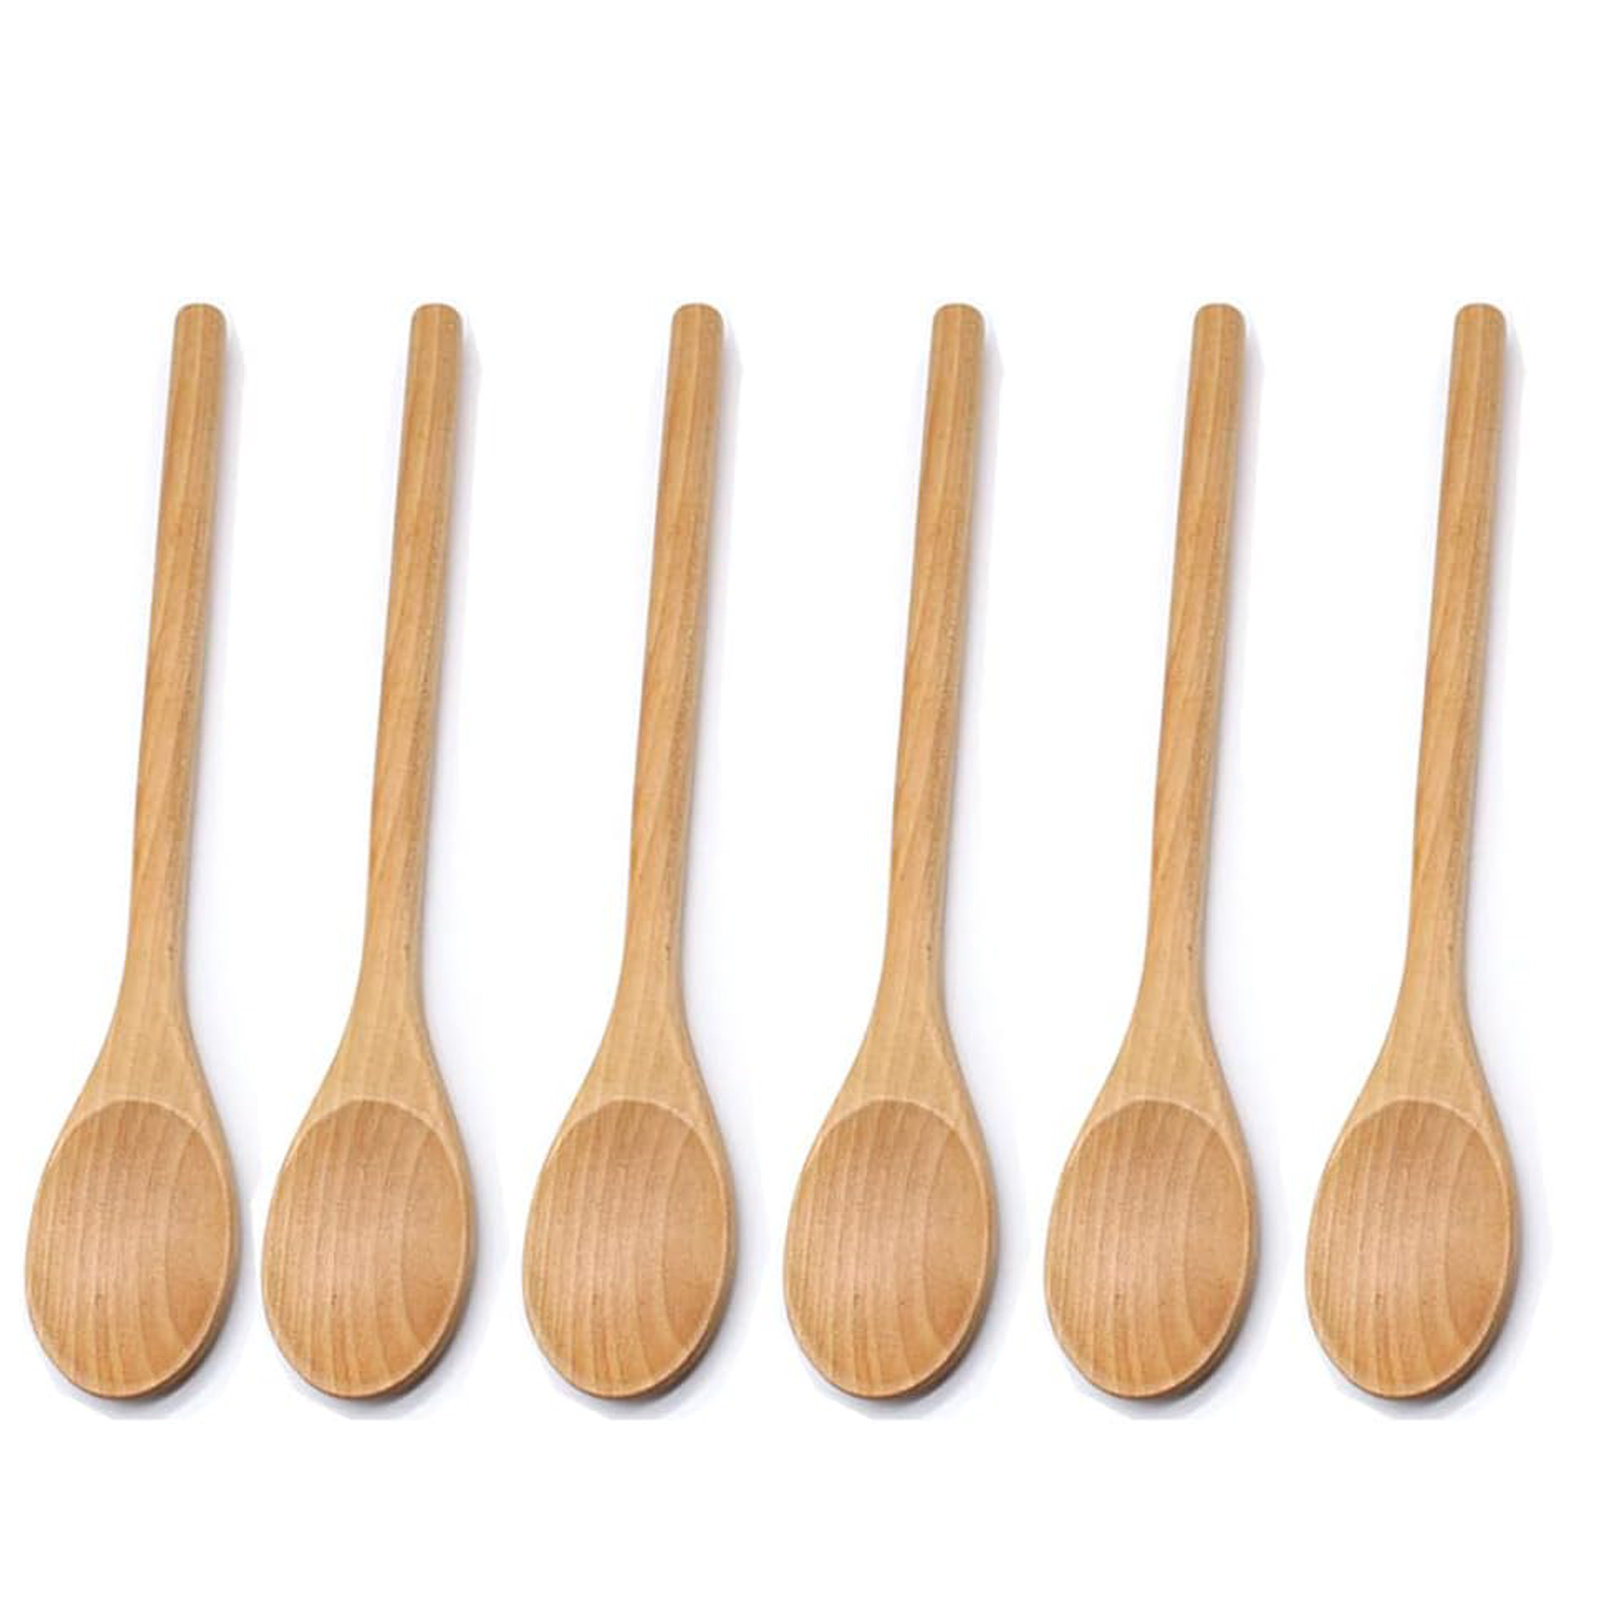 https://assets.wfcdn.com/im/86337637/compr-r85/2526/252670539/wooden-spoon-kitchen-utensils.jpg